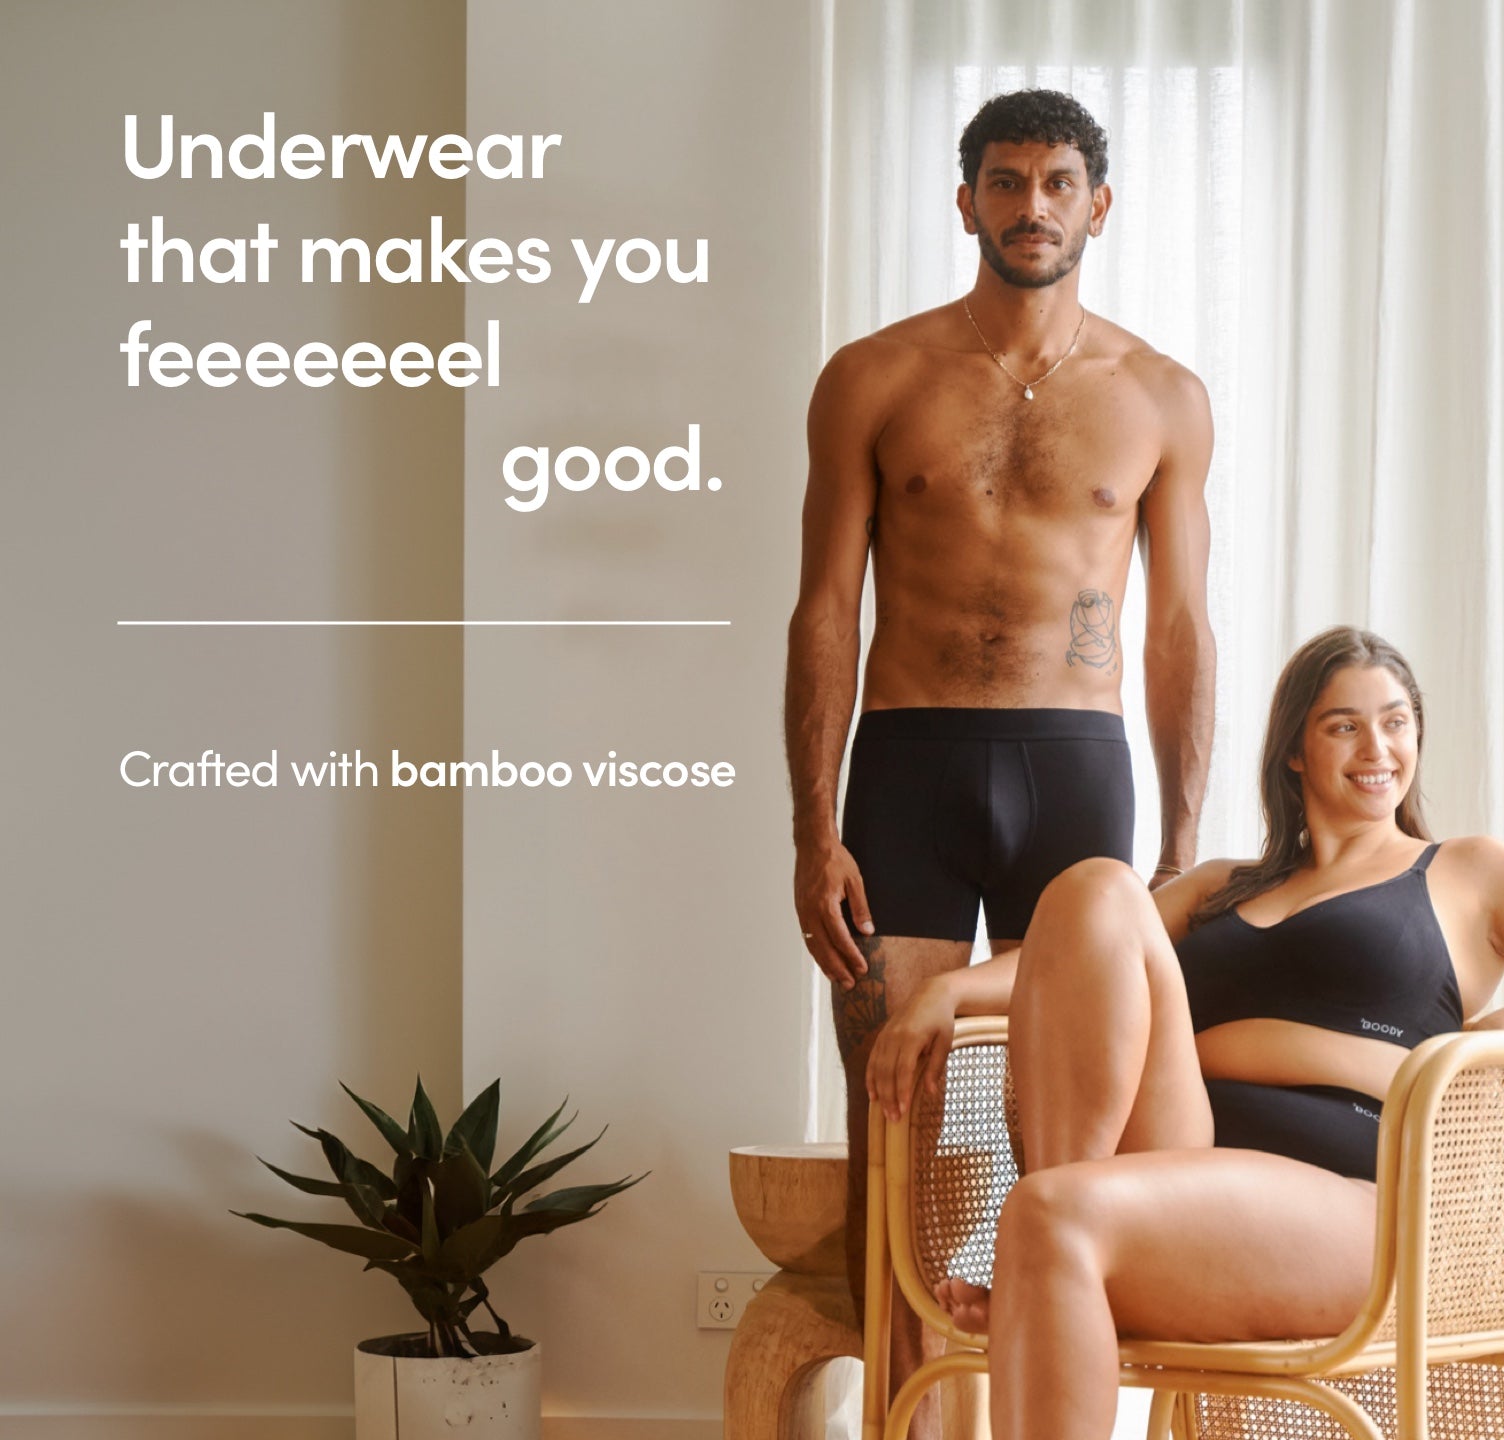 Y.O.U Underwear: We make ethical underwear for men and women